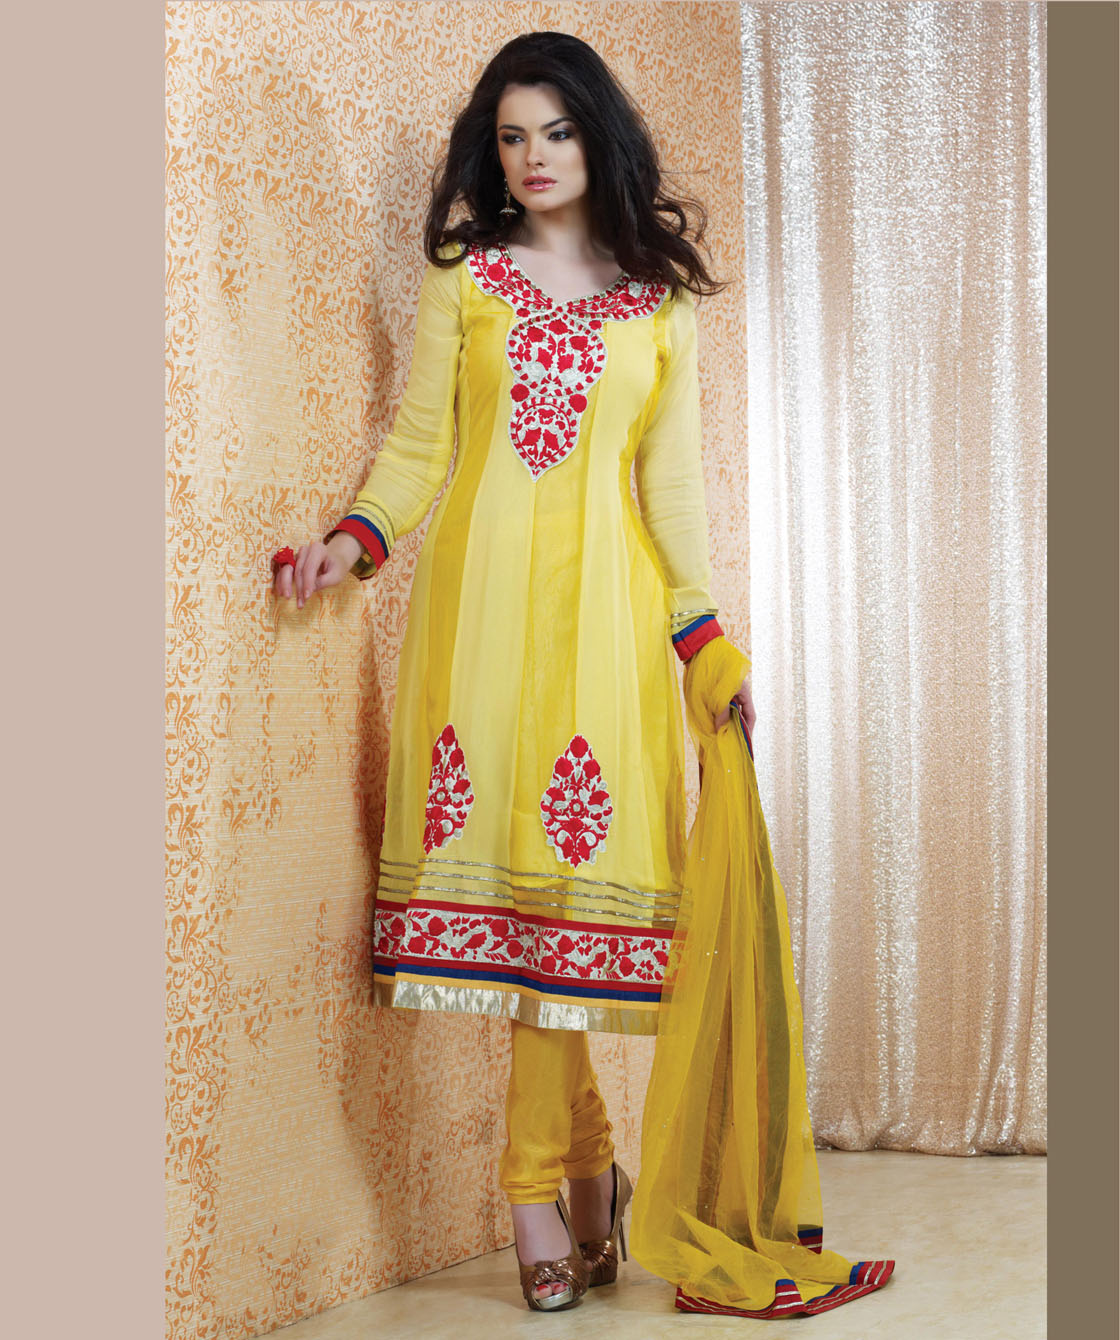 wedding dresses 2014 summer Indian Salwar Kameez Online 2013-2014 | New Party Dresses Fashion